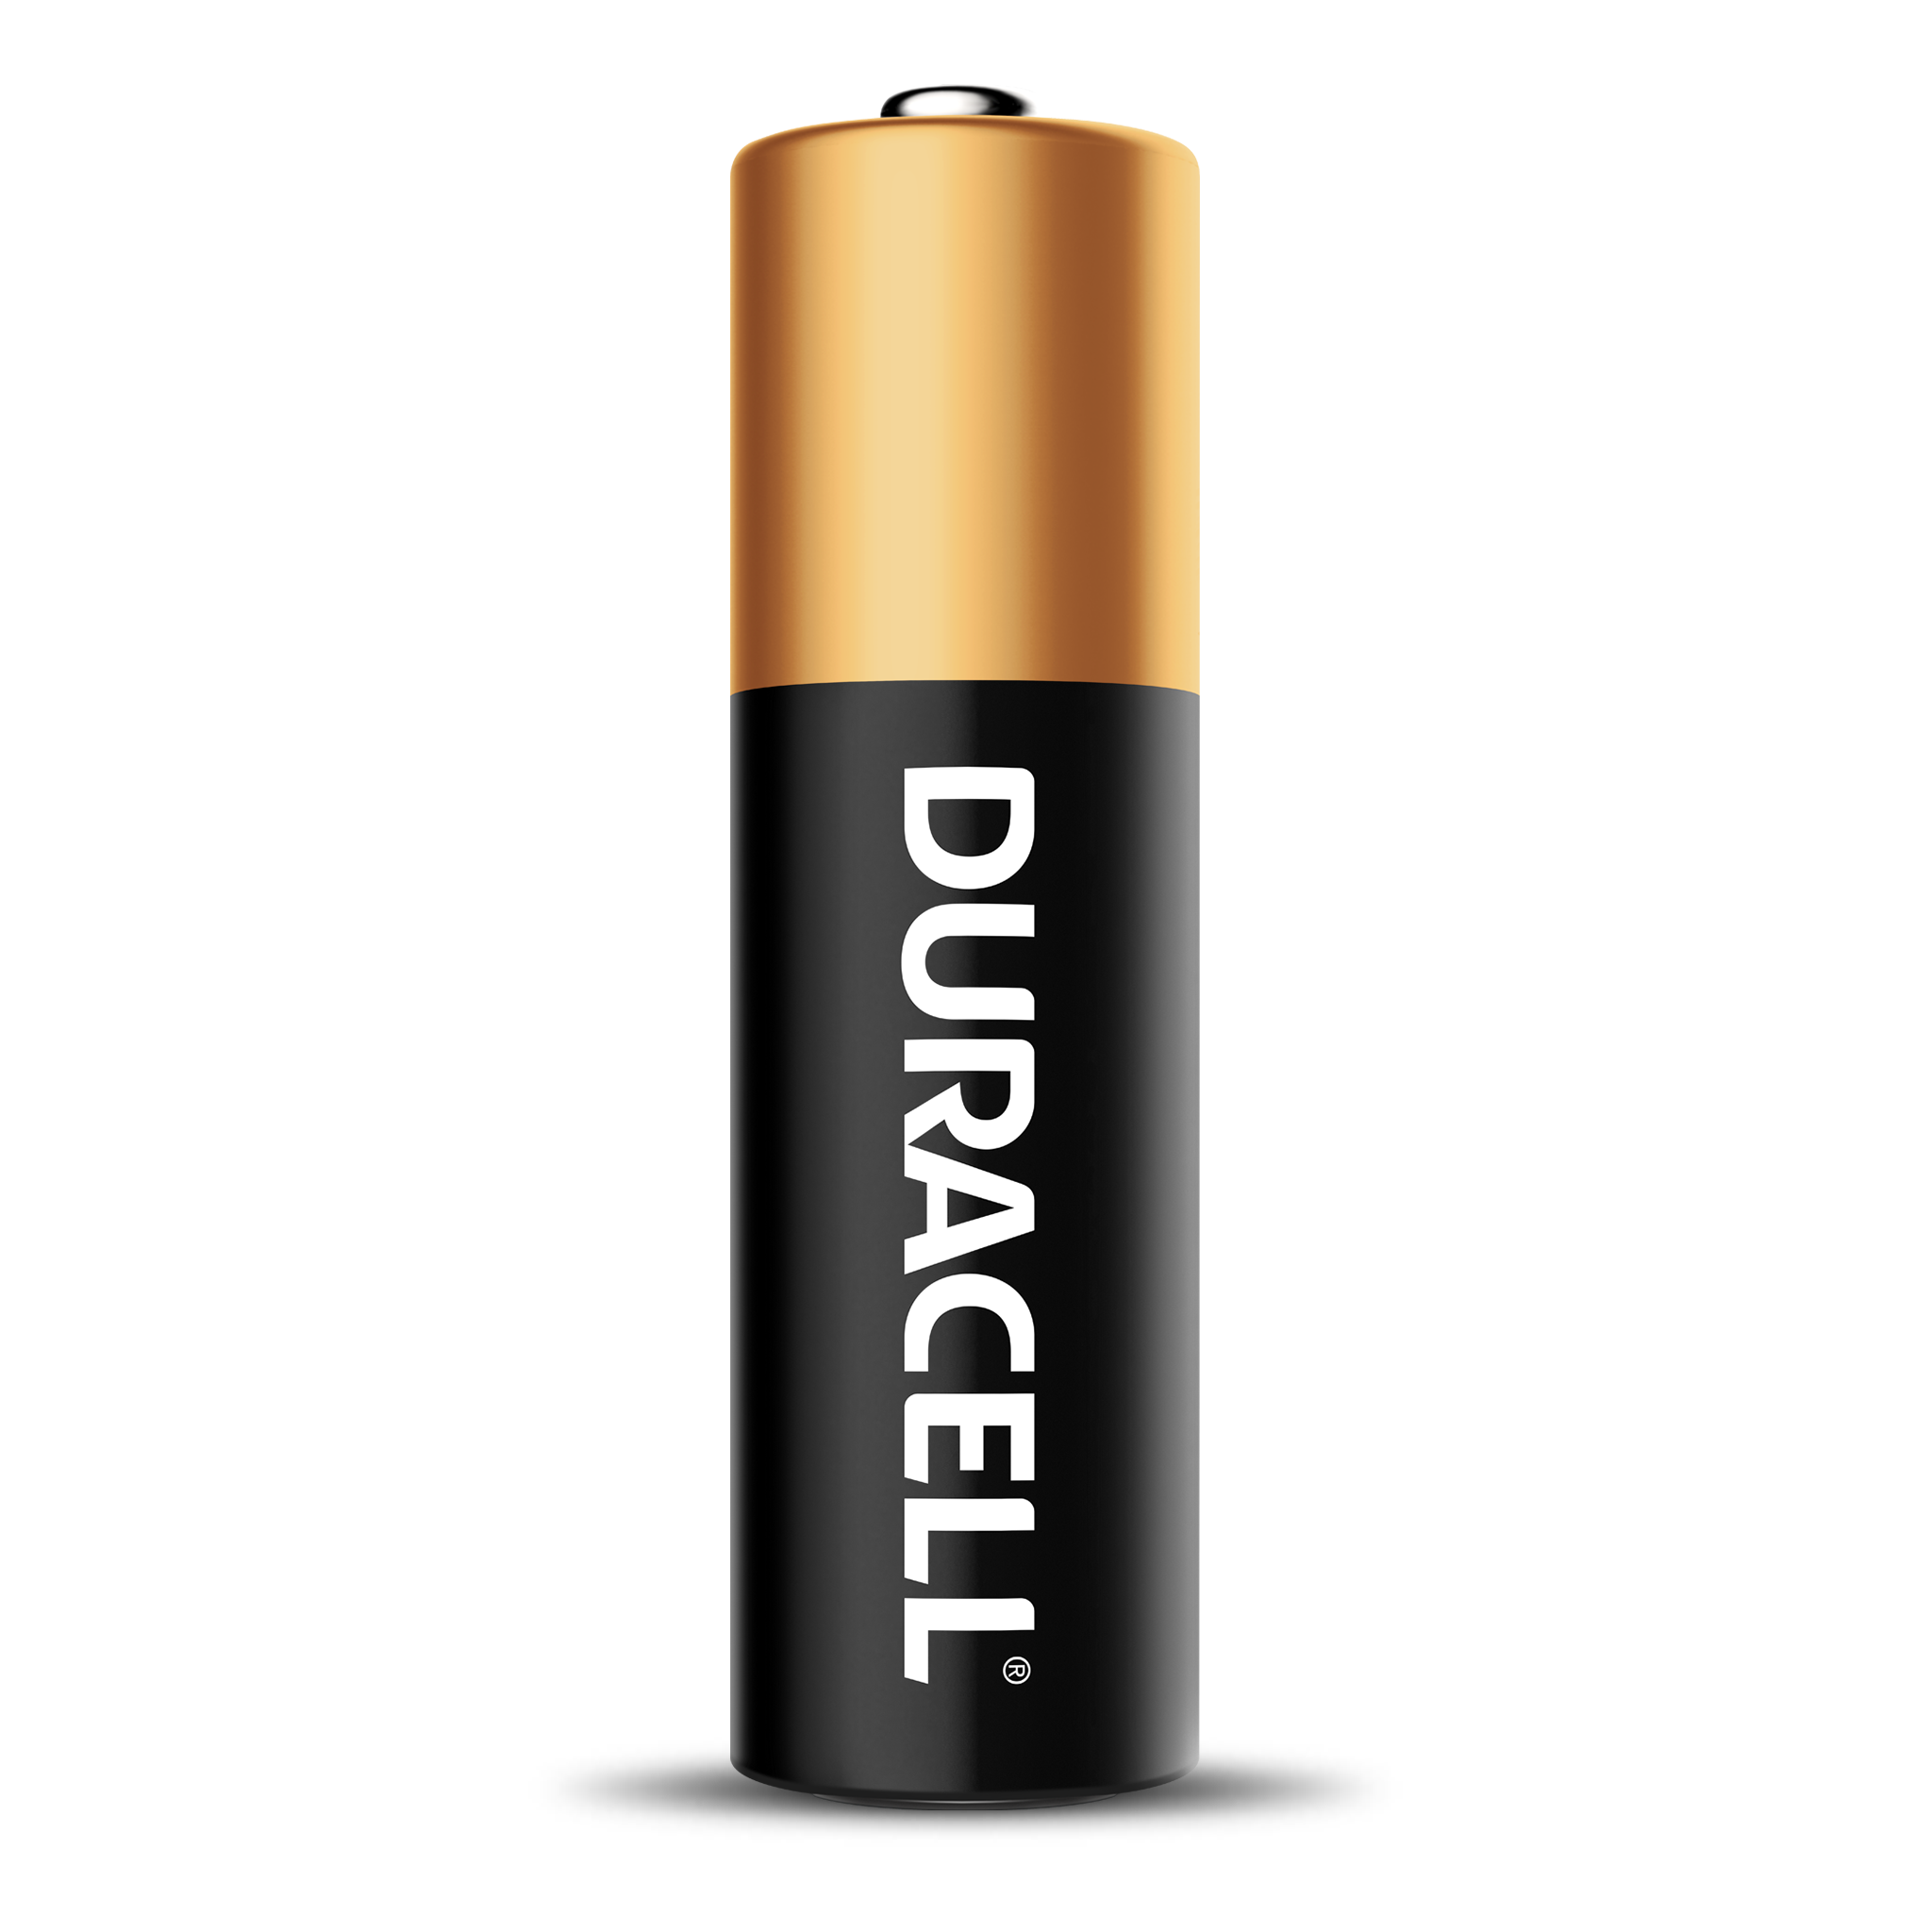 Consomac : Il y a maintenant des piles Duracell compatibles avec